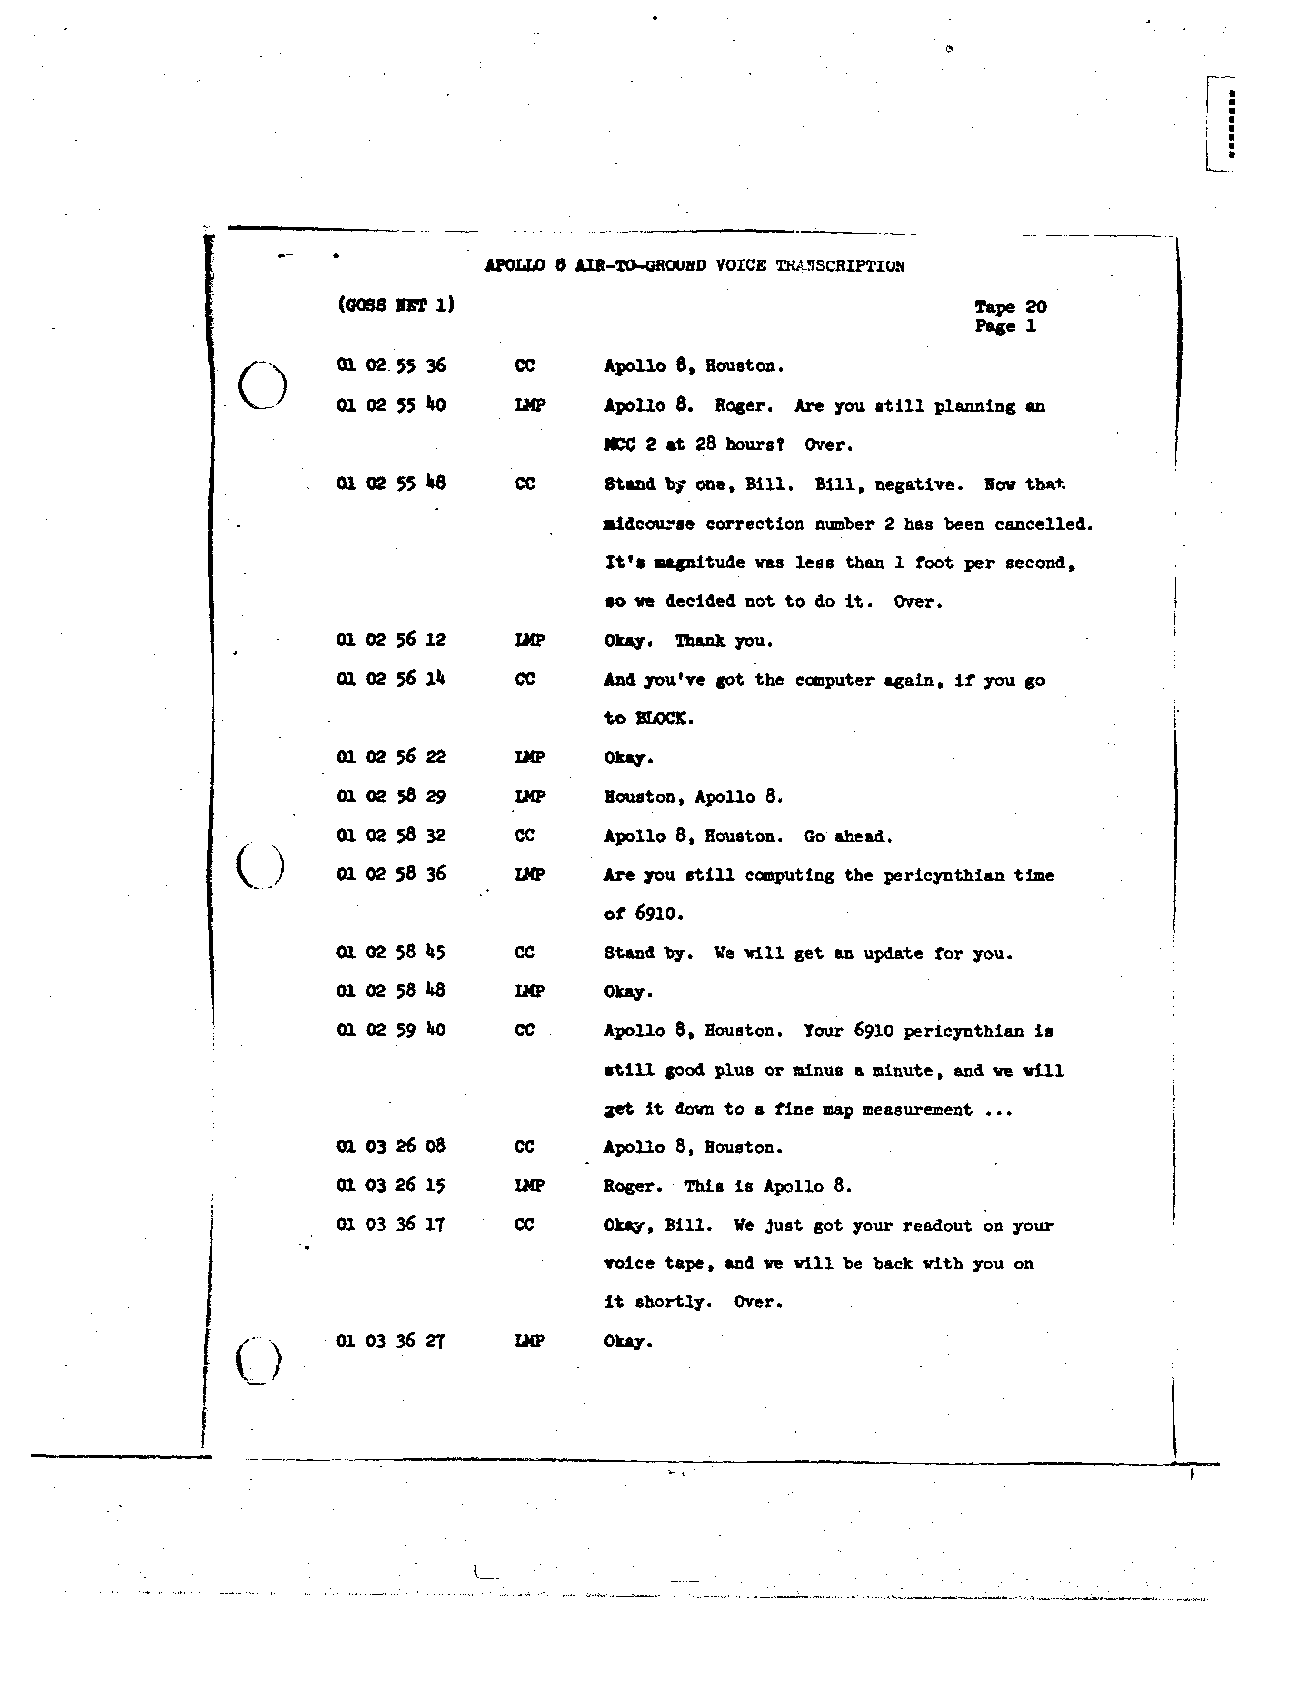 Page 154 of Apollo 8’s original transcript